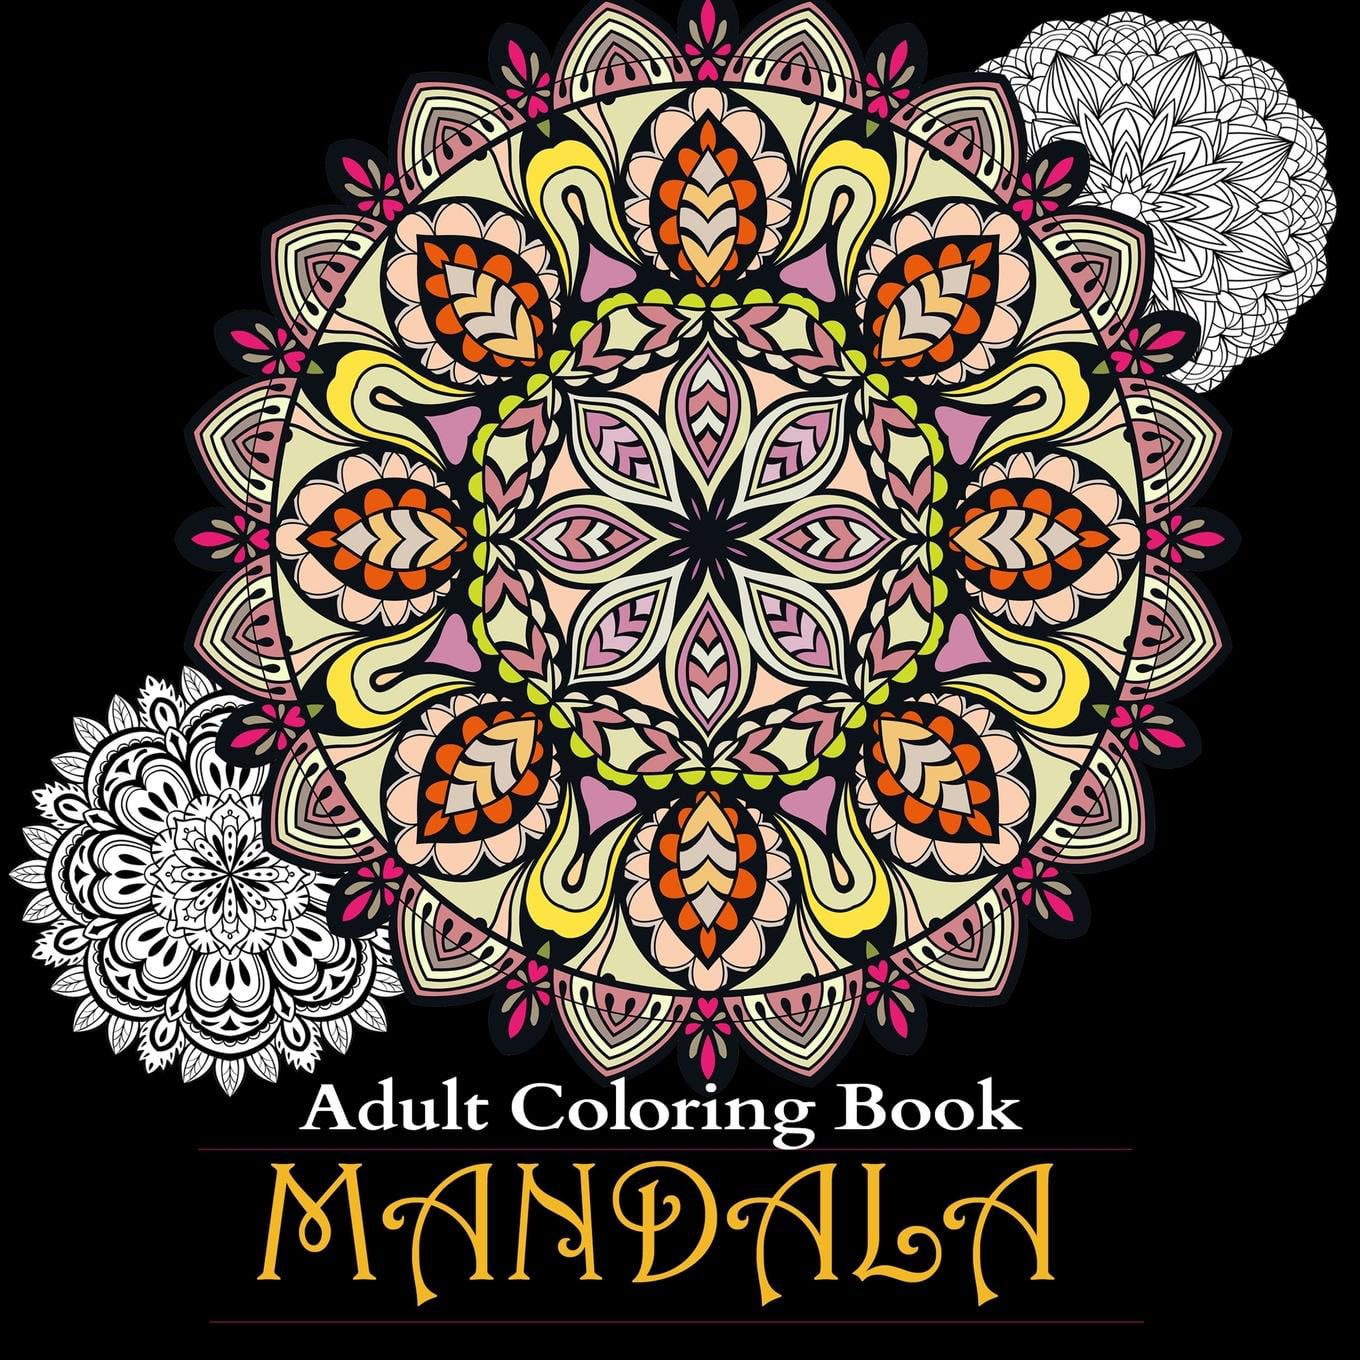 Download Adult Coloring Books - Walmart.com - Walmart.com